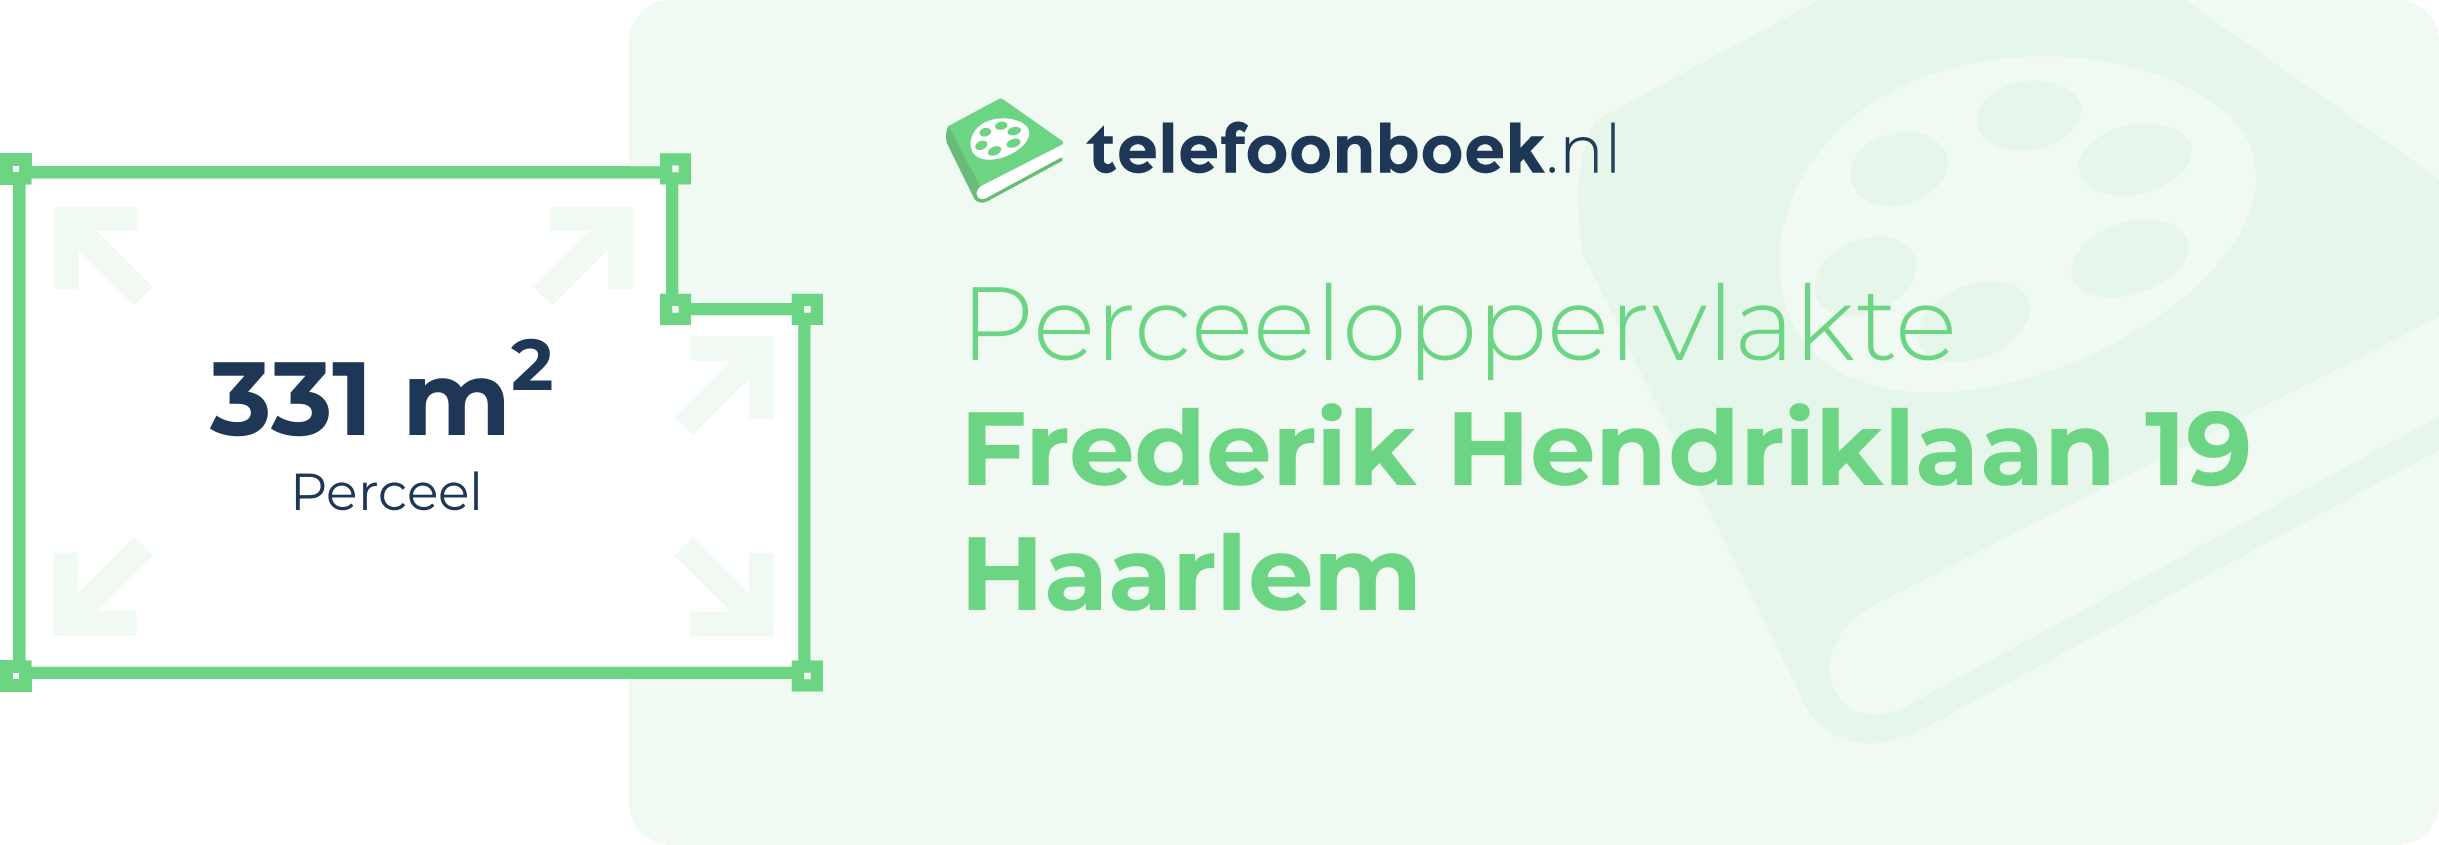 Perceeloppervlakte Frederik Hendriklaan 19 Haarlem